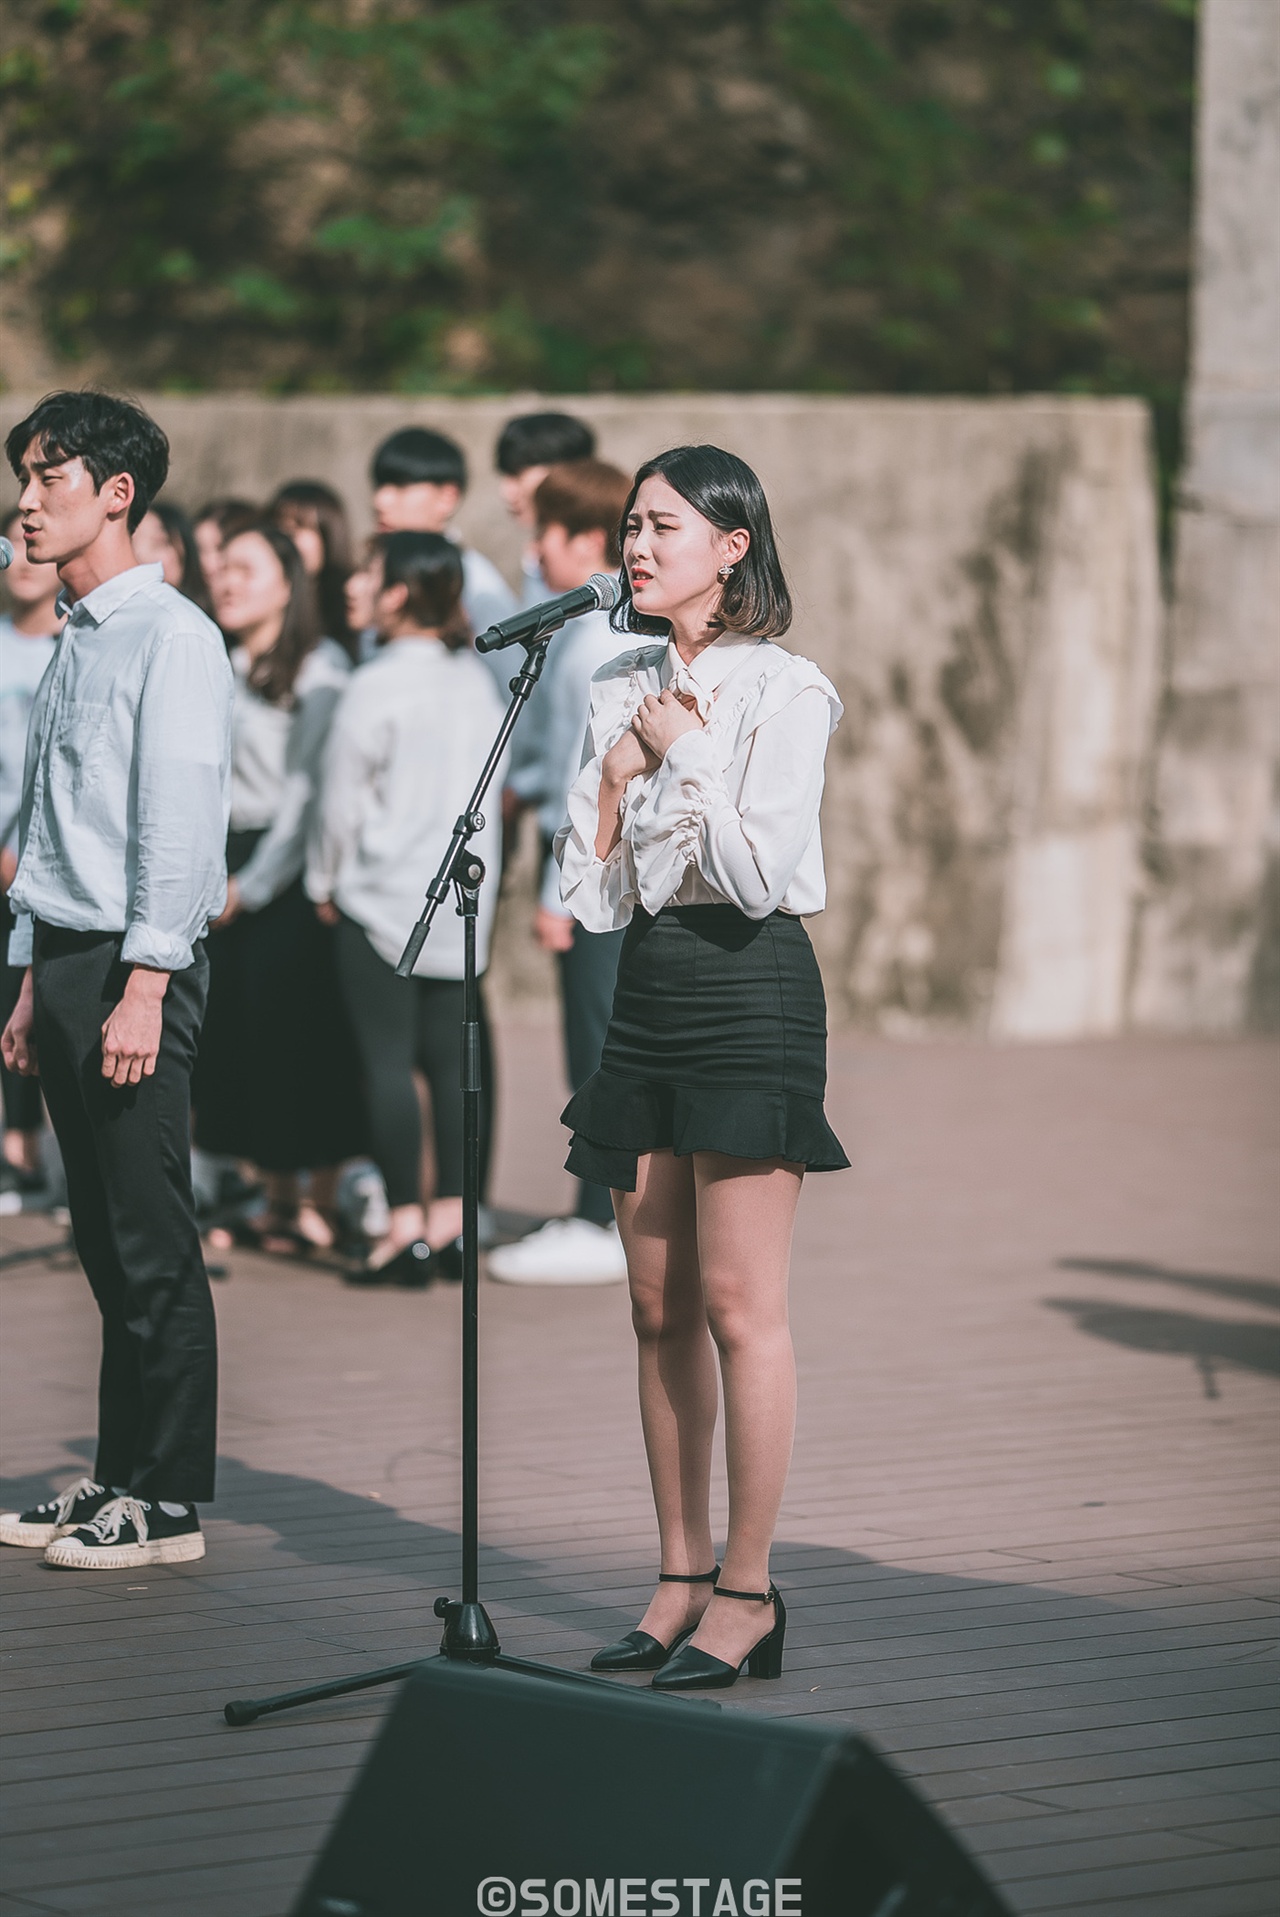  2018 현대차그룹 대학 연극·뮤지컬 페스티벌 프로그램 '싱잉 인 더 탱크'에서 예원예술대학교 학생이 노래하고 있다.